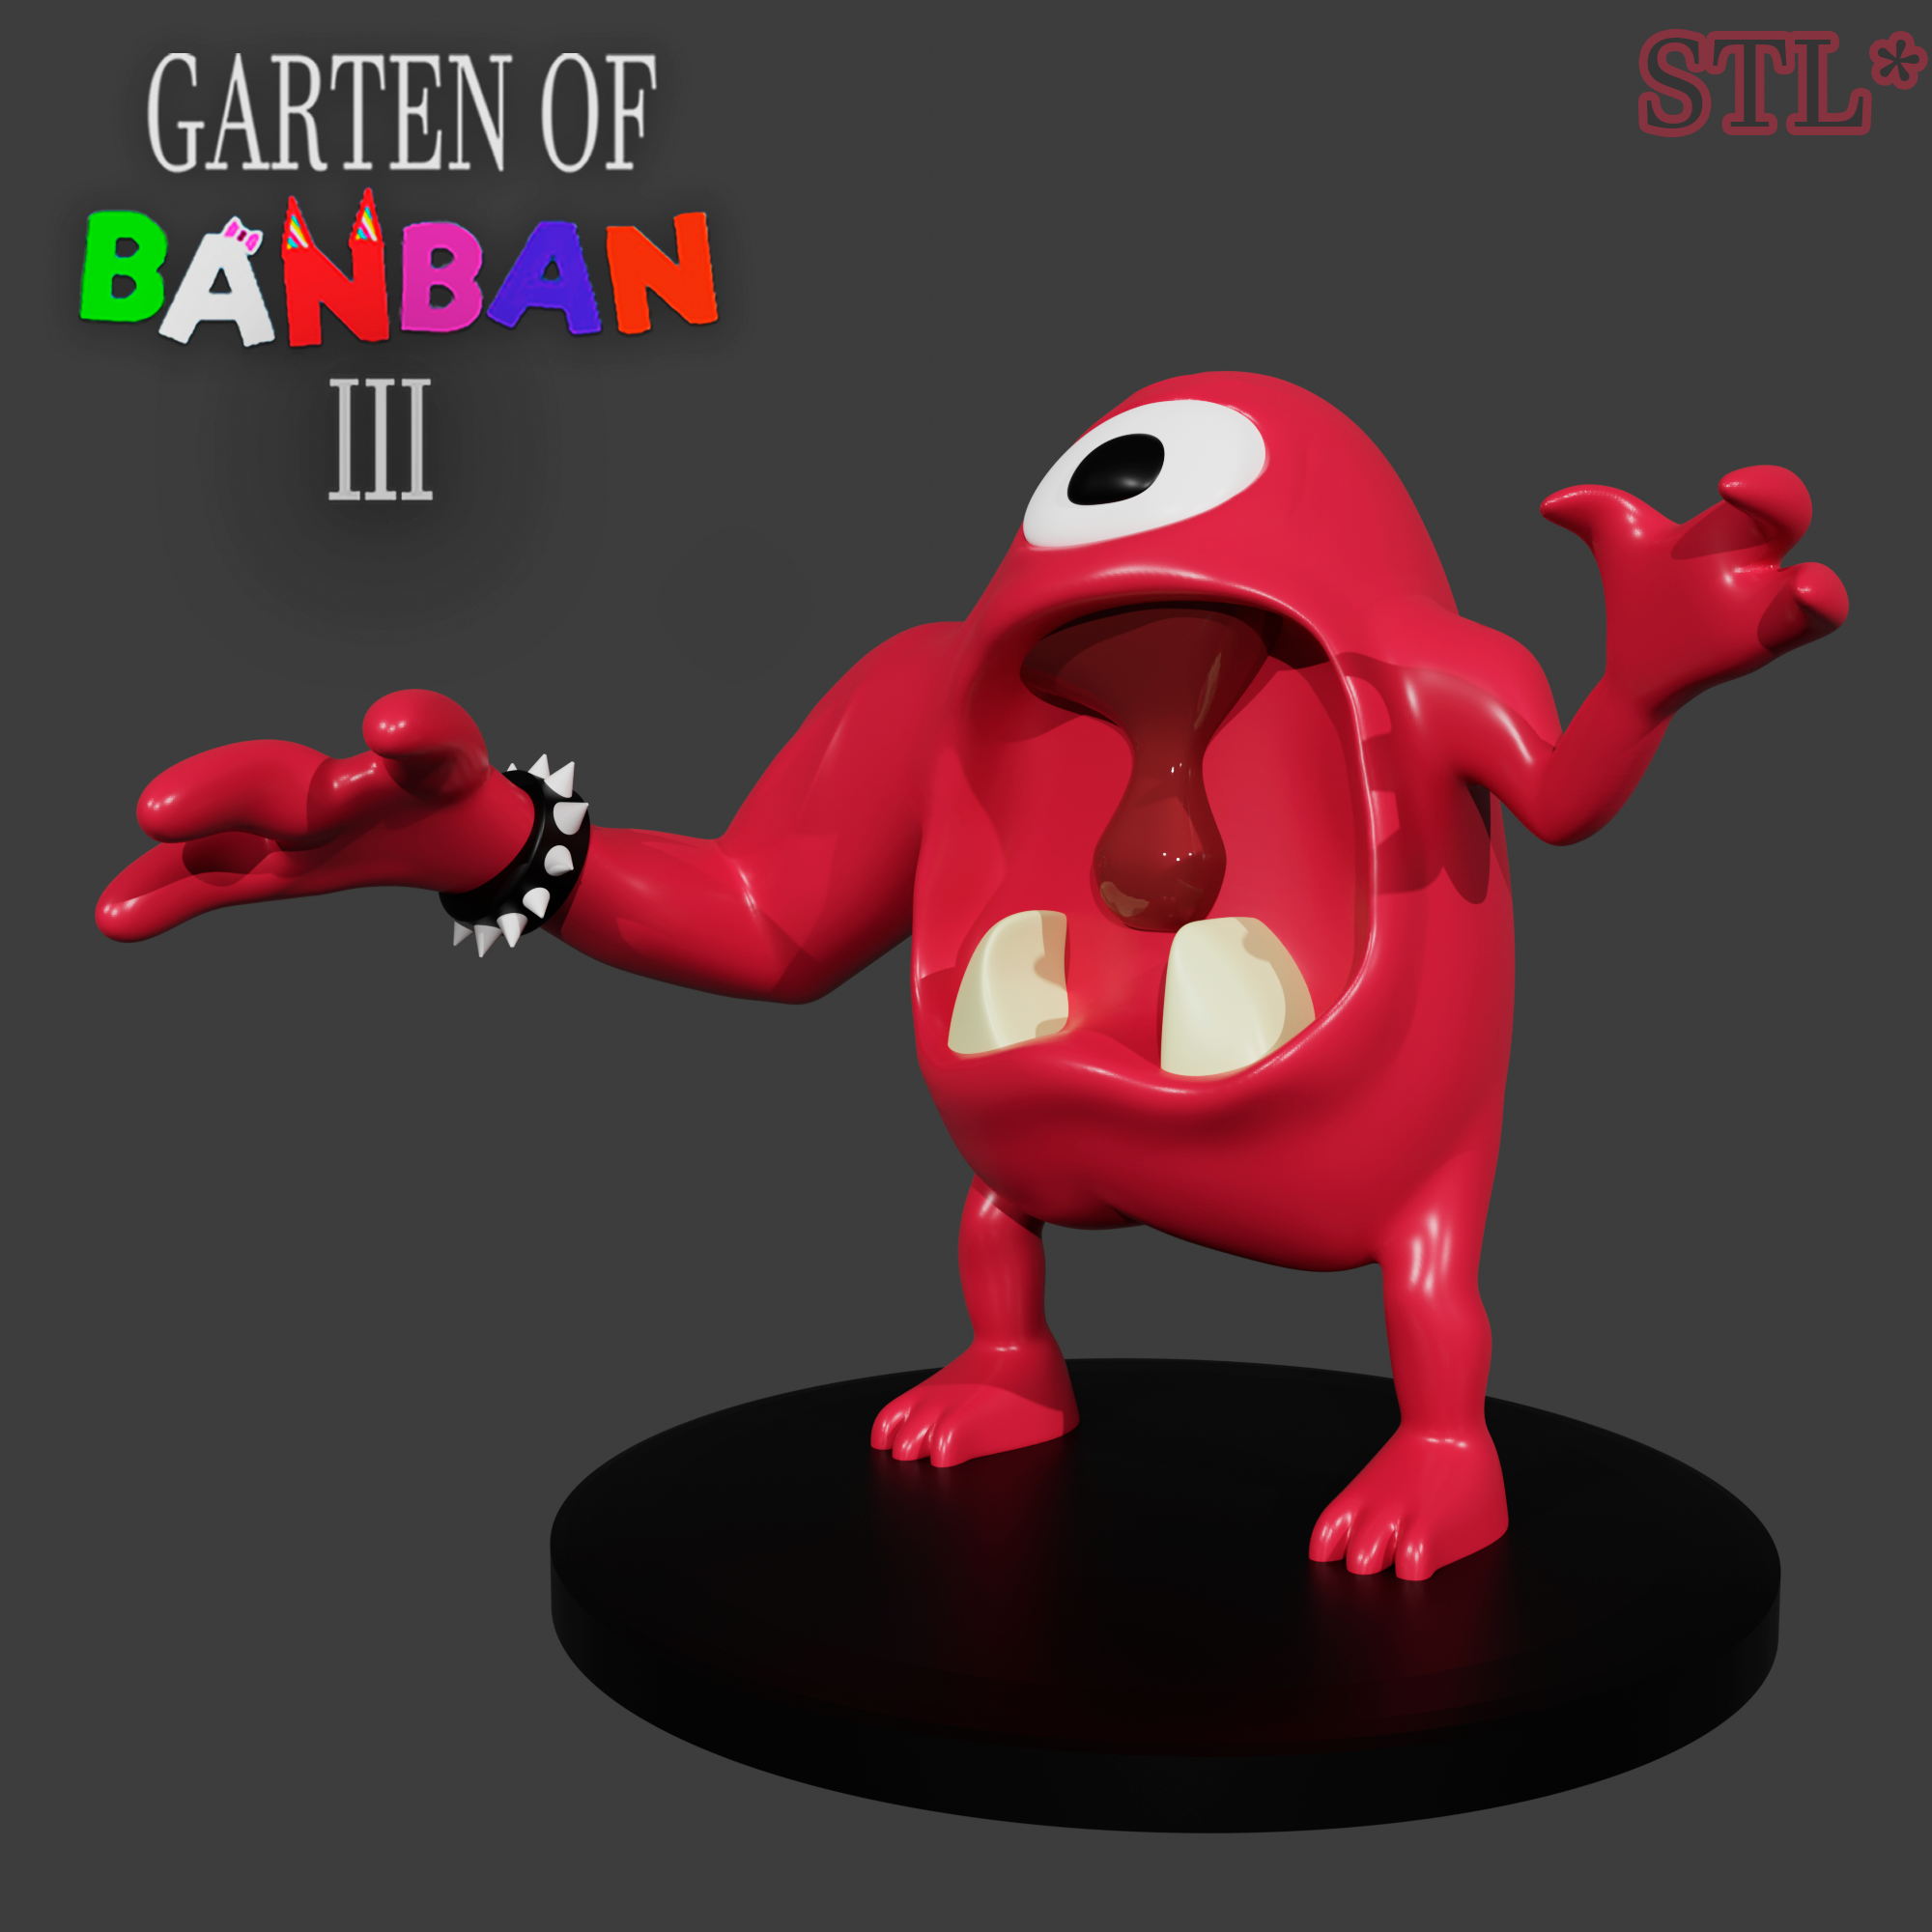 How long is Garten of Banban III?